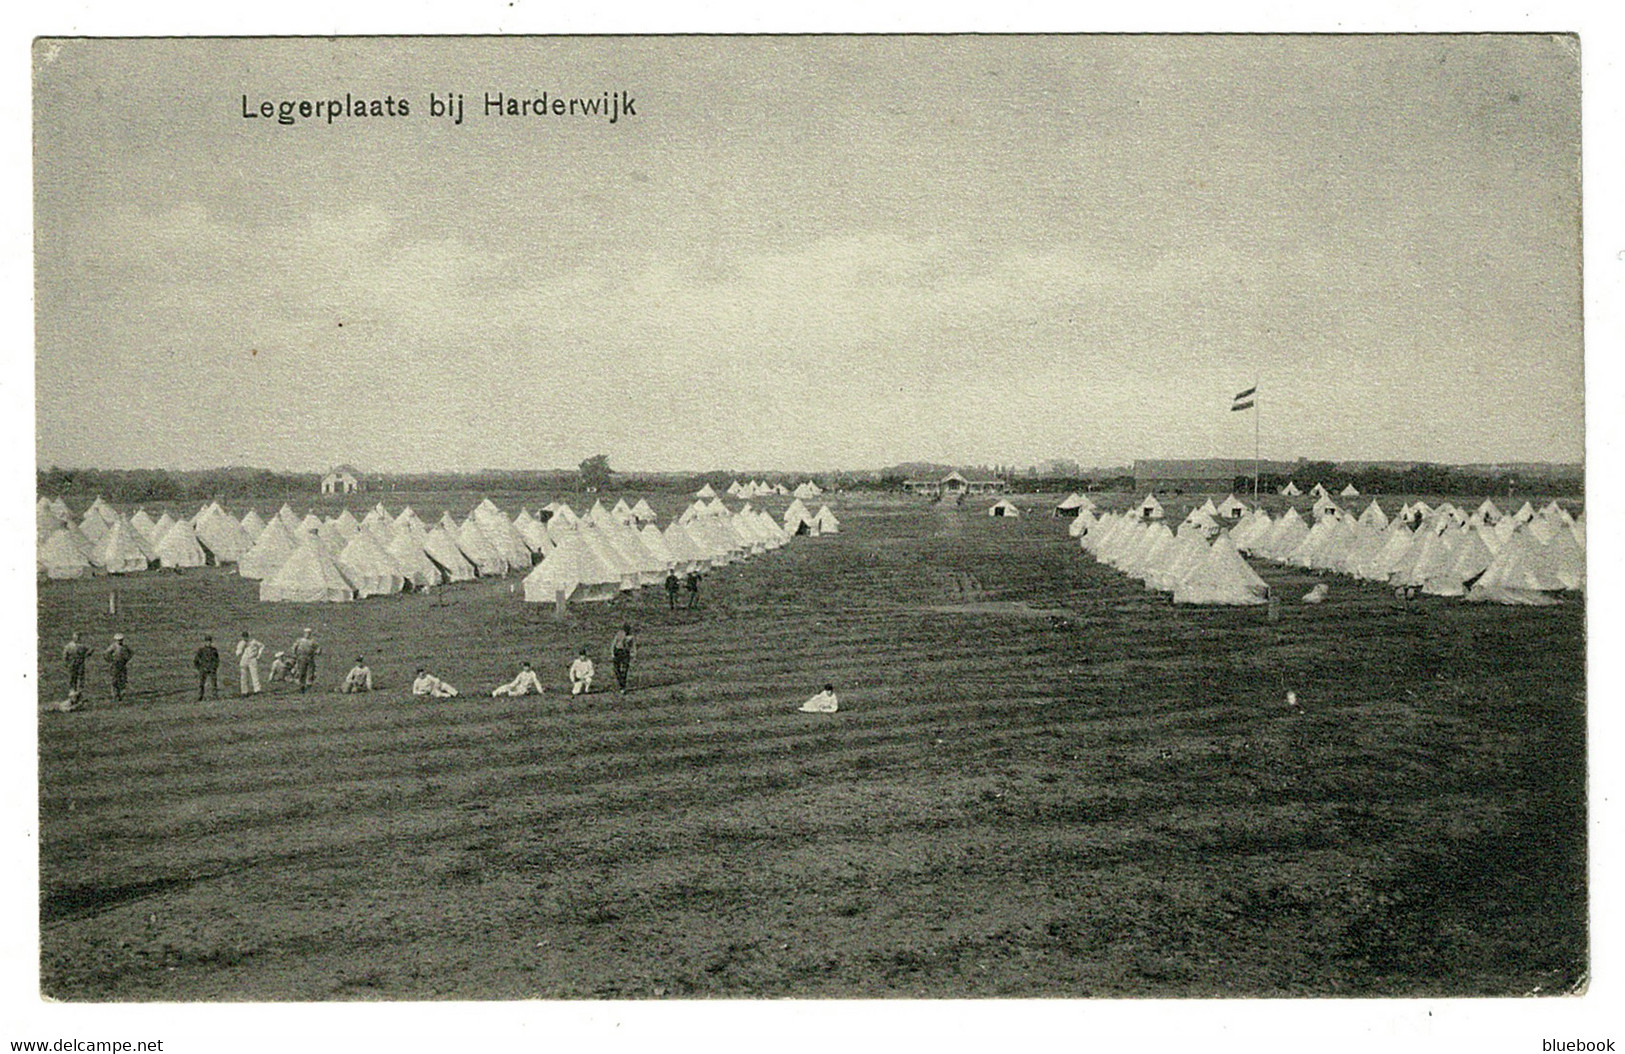 Ref 1510 - Early Military Camp Postcard - Legerplaats Bij Harderwijk - Gelderland Netherlands Holland - Harderwijk